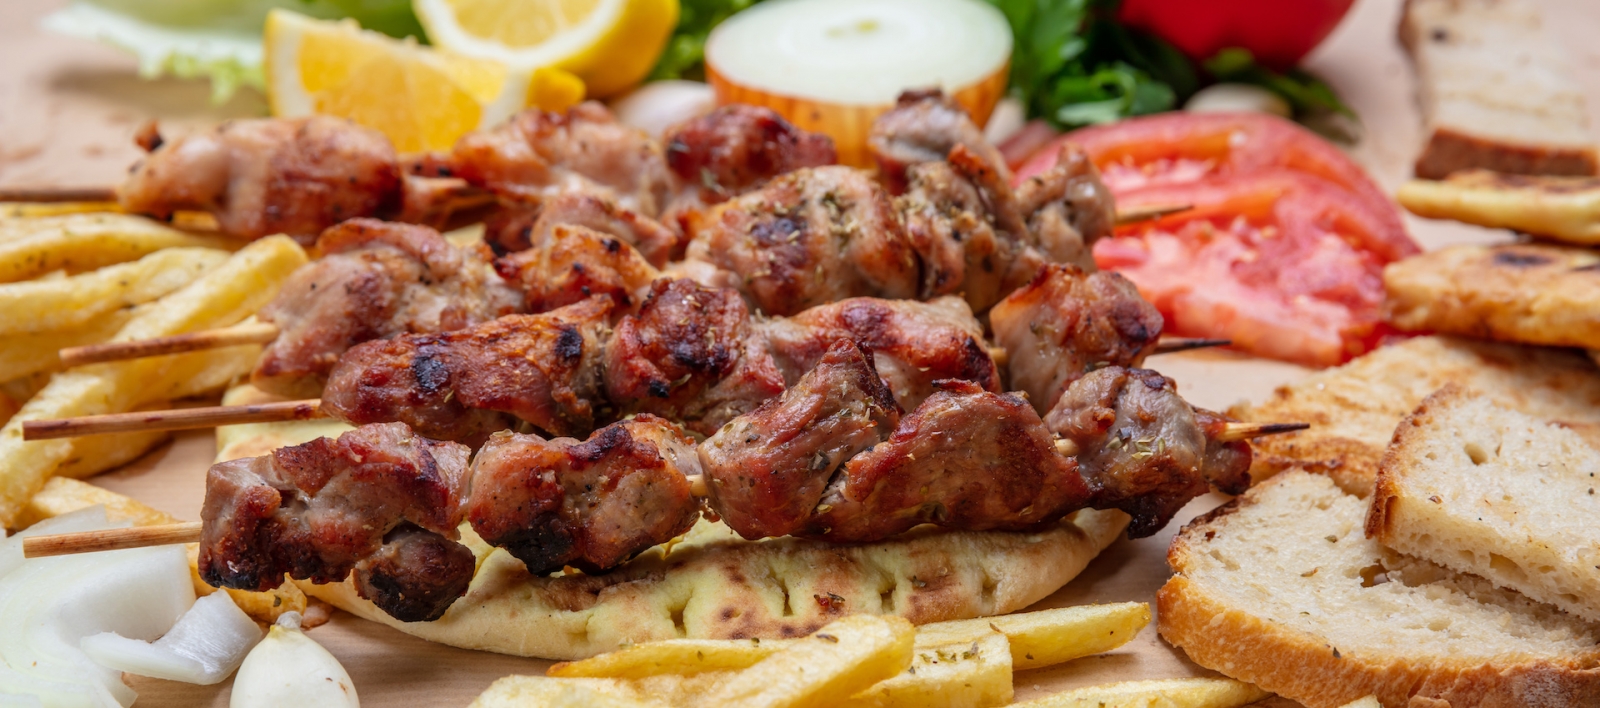 Souvlaki, Fleischspieße, traditionelle griechische türkische Fleischgerichte auf Fladenbrot und Kartoffeln